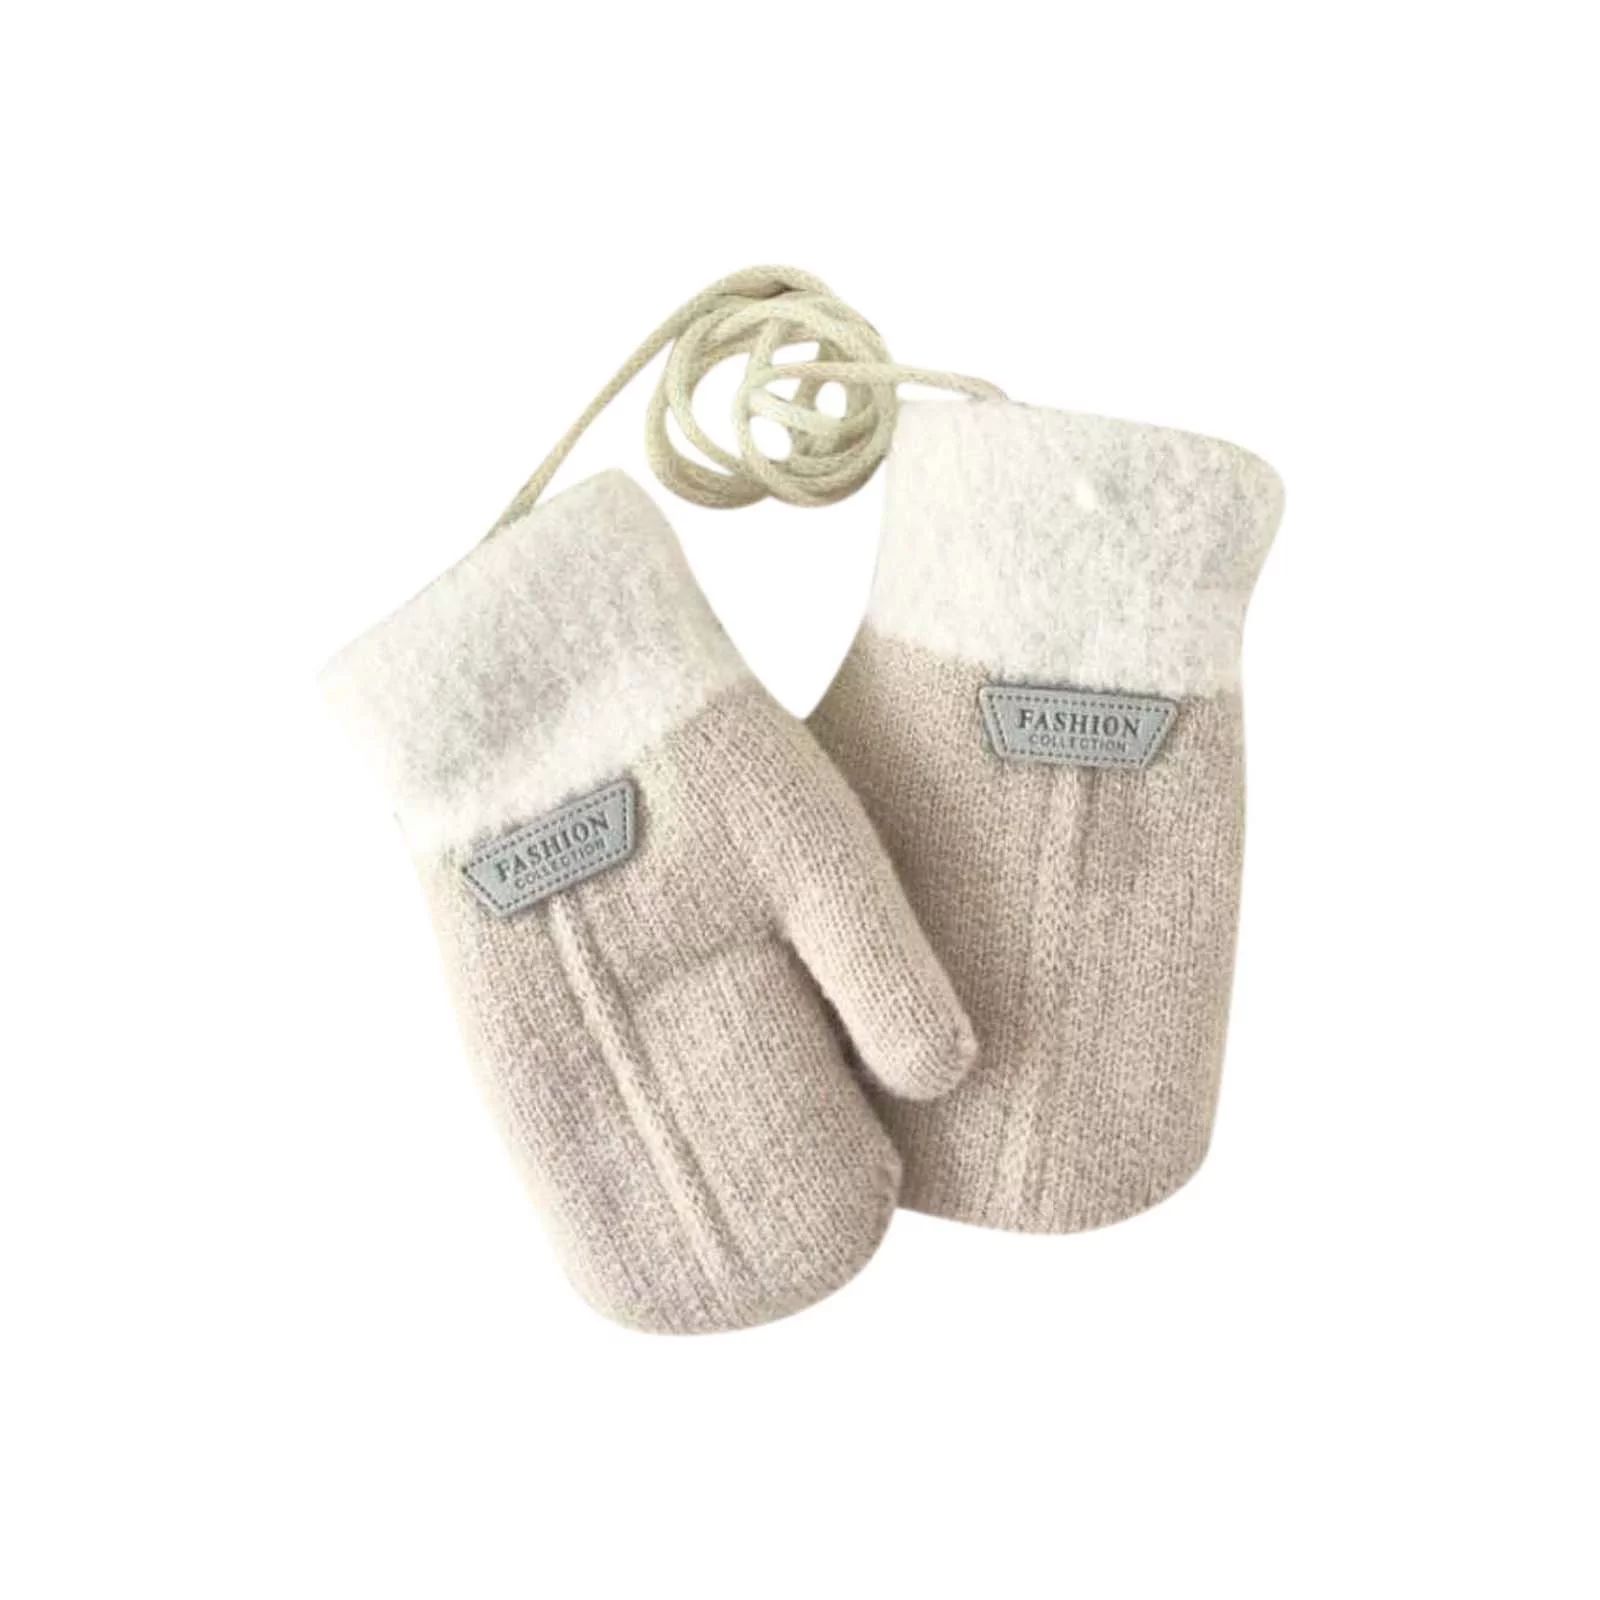 JDEFEG Mitten Strings for Kids Mittens for Baby Snow Glove for Kids Girls Boys Winter Snow Ski Gl... | Walmart (US)